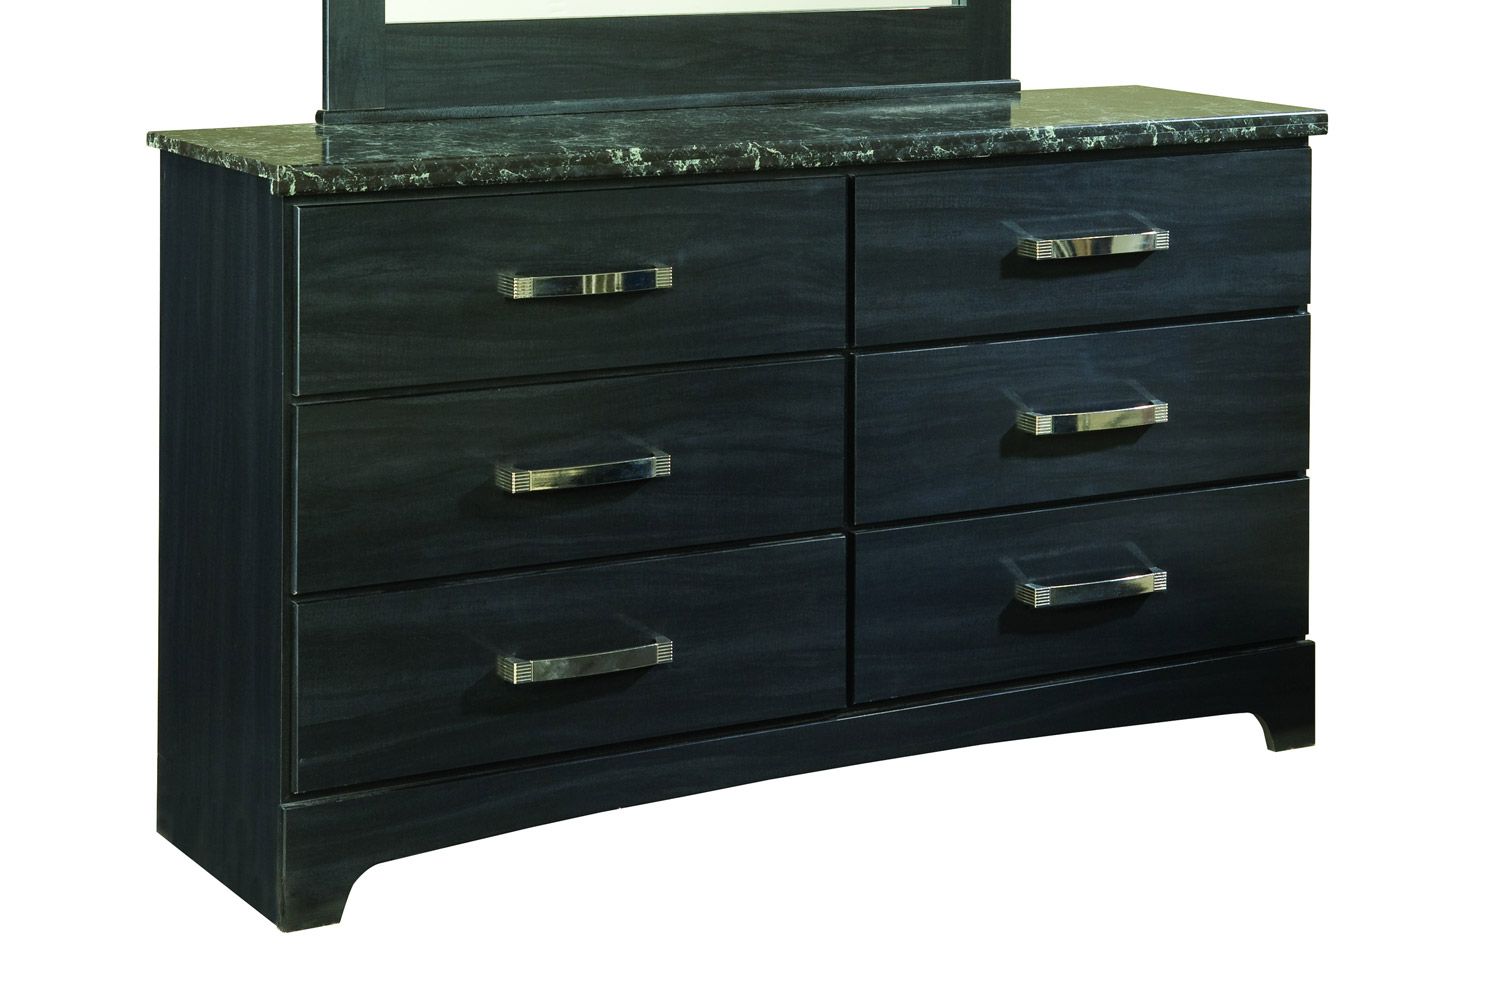 Global Furniture USA Olivia Dresser - Engineered Wood/Oak Wood Graining Laminate - Black